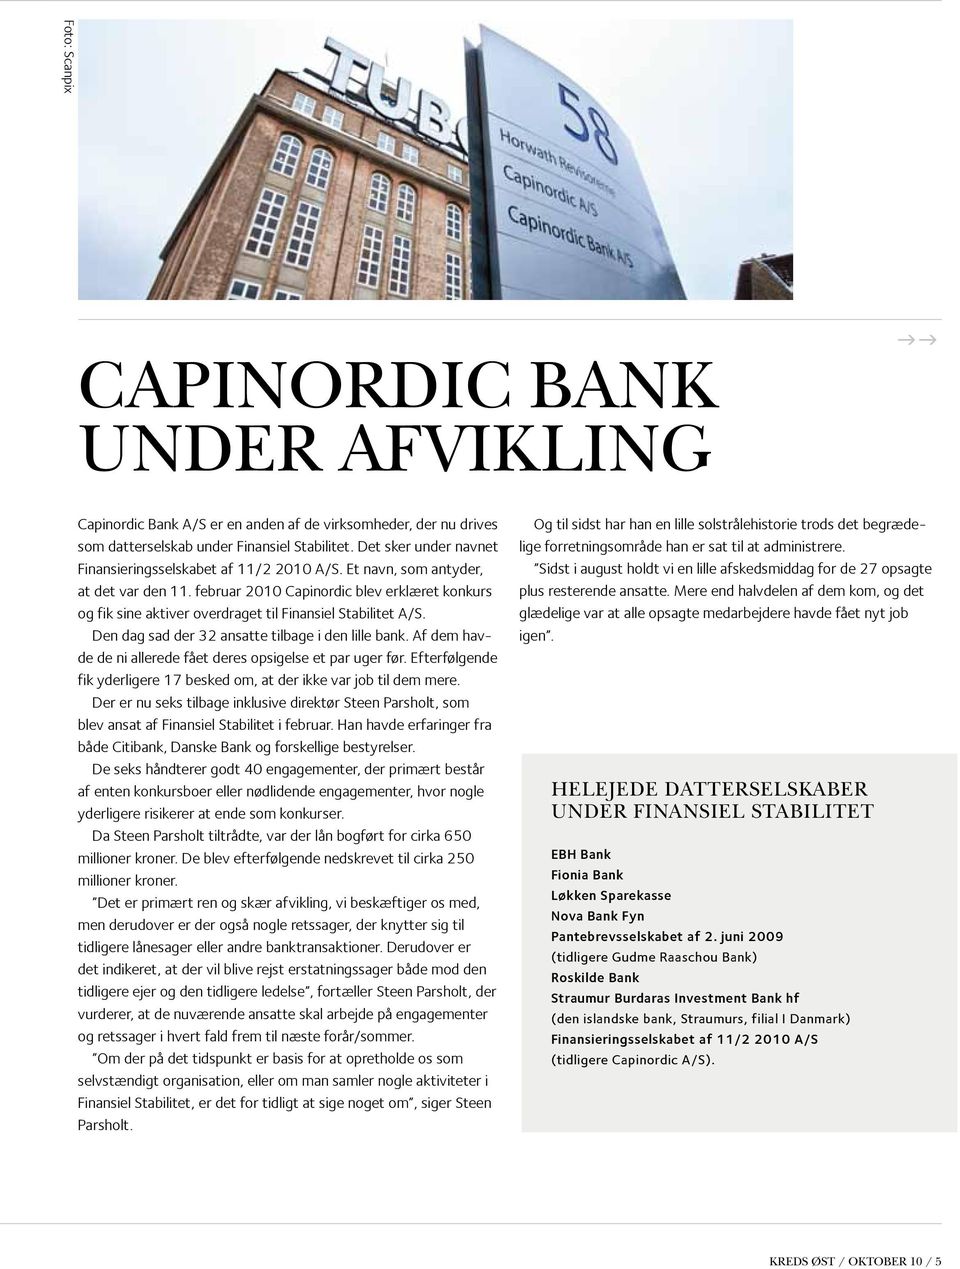 februar 2010 Capinordic blev erklæret konkurs og fik sine aktiver overdraget til Finansiel Stabilitet A/S. Den dag sad der 32 ansatte tilbage i den lille bank.